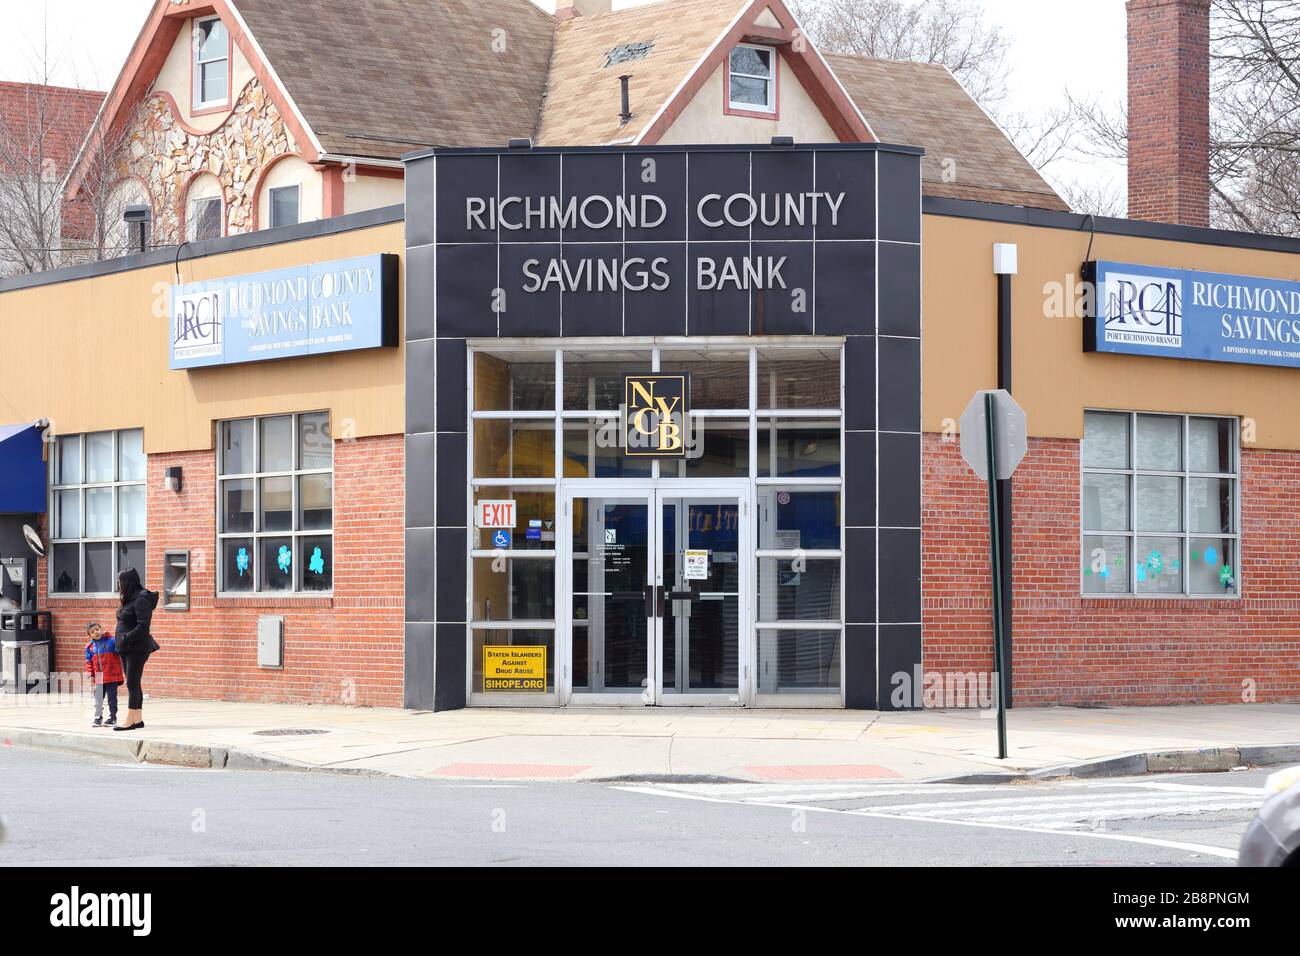 Richmond County Savings Bank, 282 Port Richmond Ave, Staten Island, New York. NYC-Schaufensterfoto einer Gemeinschaftsbank in Port Richmond. Stockfoto